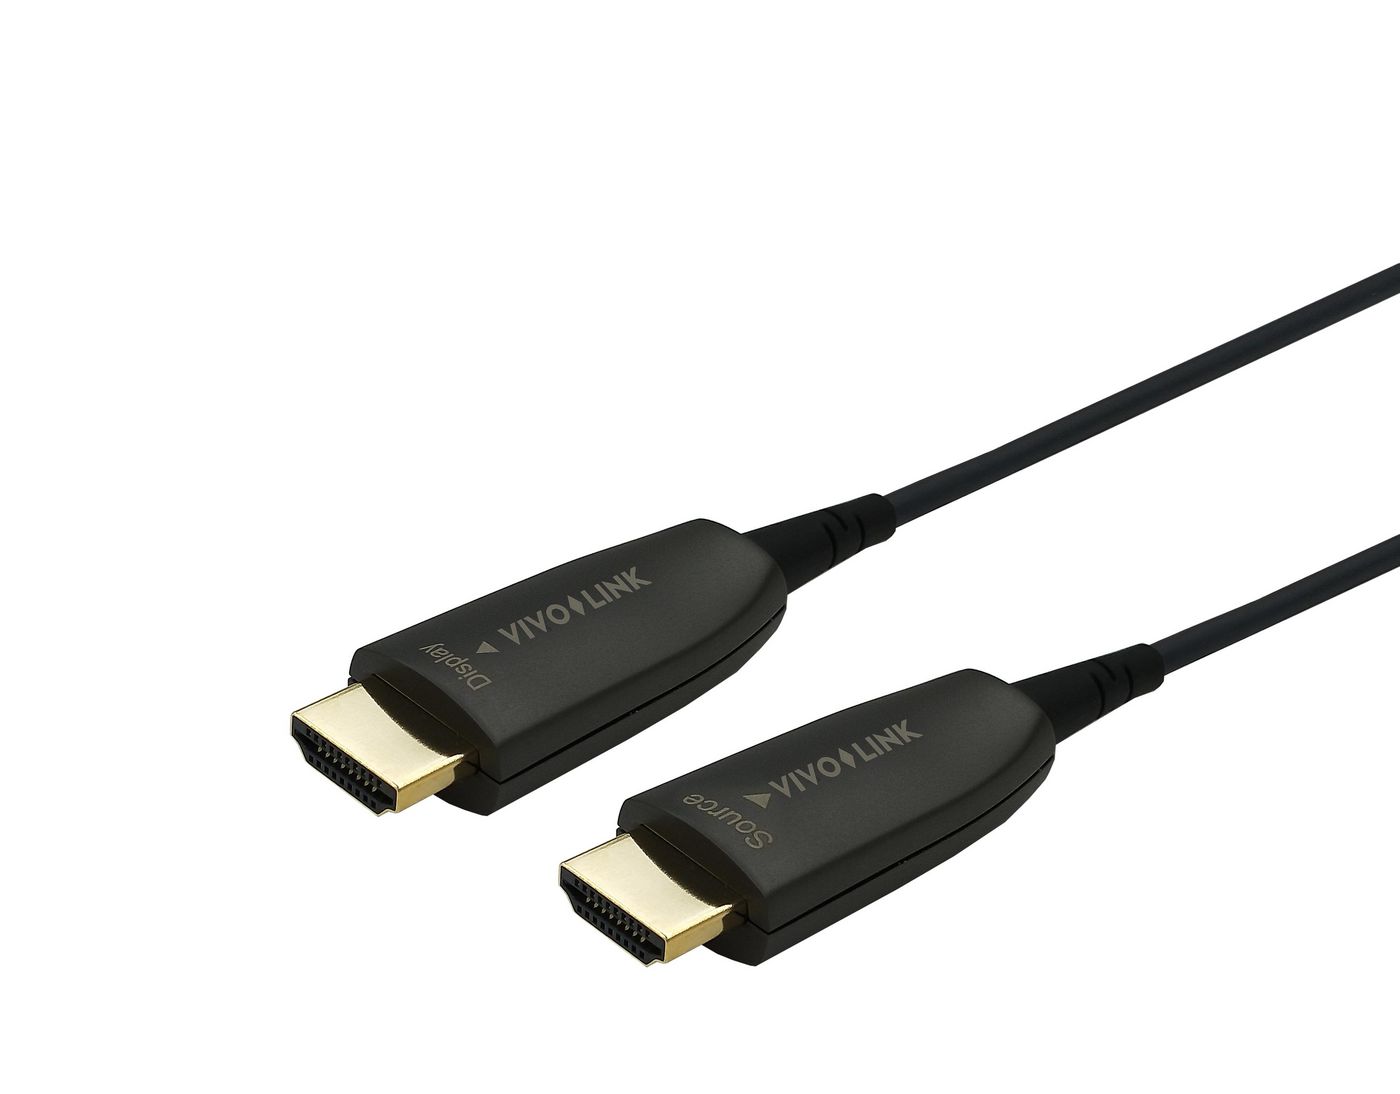 Vivolink DisplayPort to HDMI cable